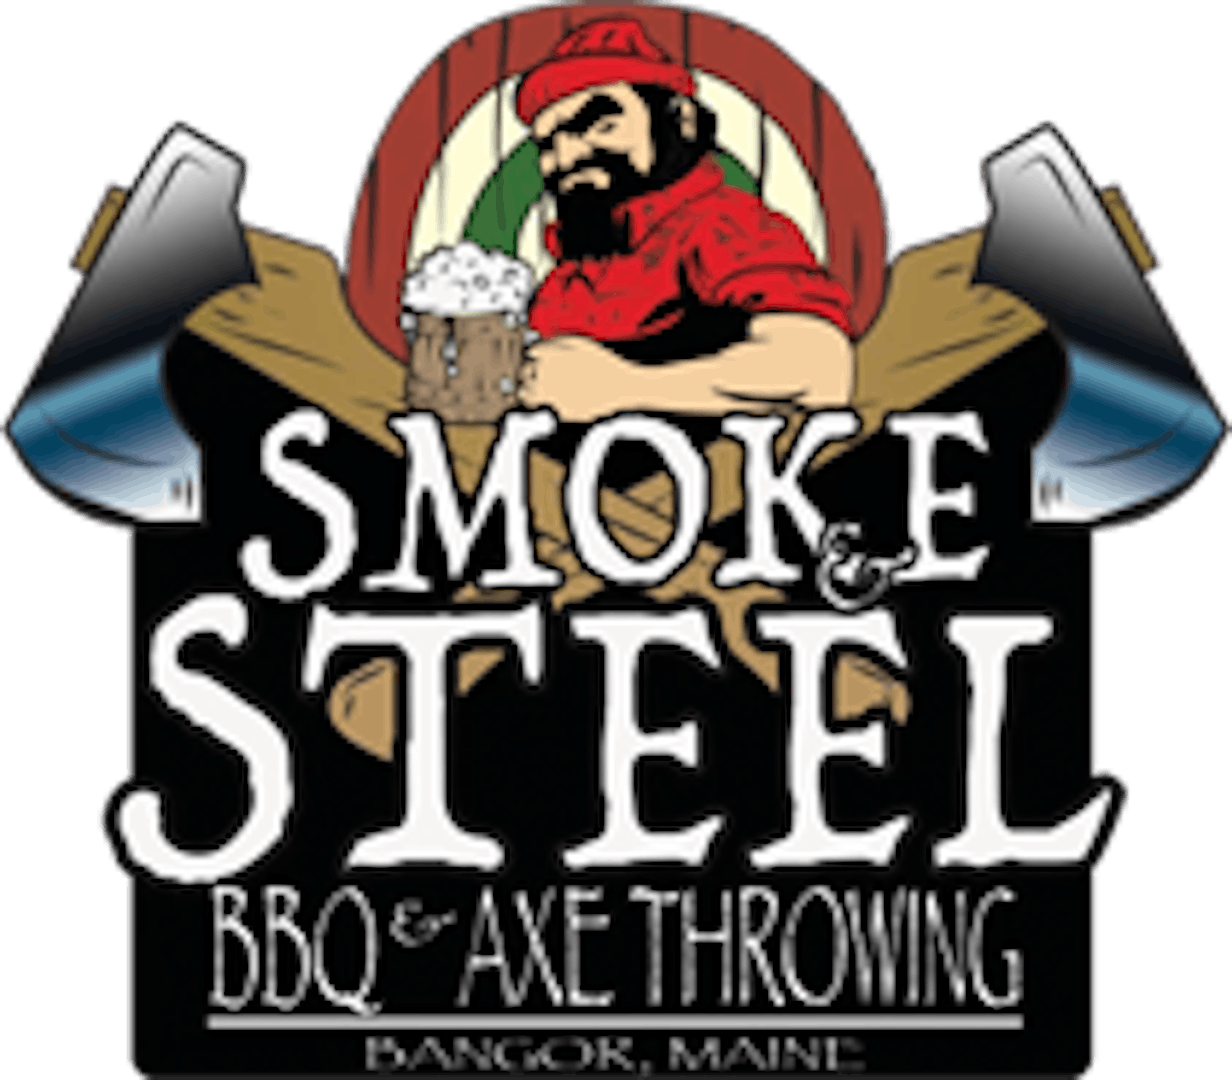 Smoke & Steel